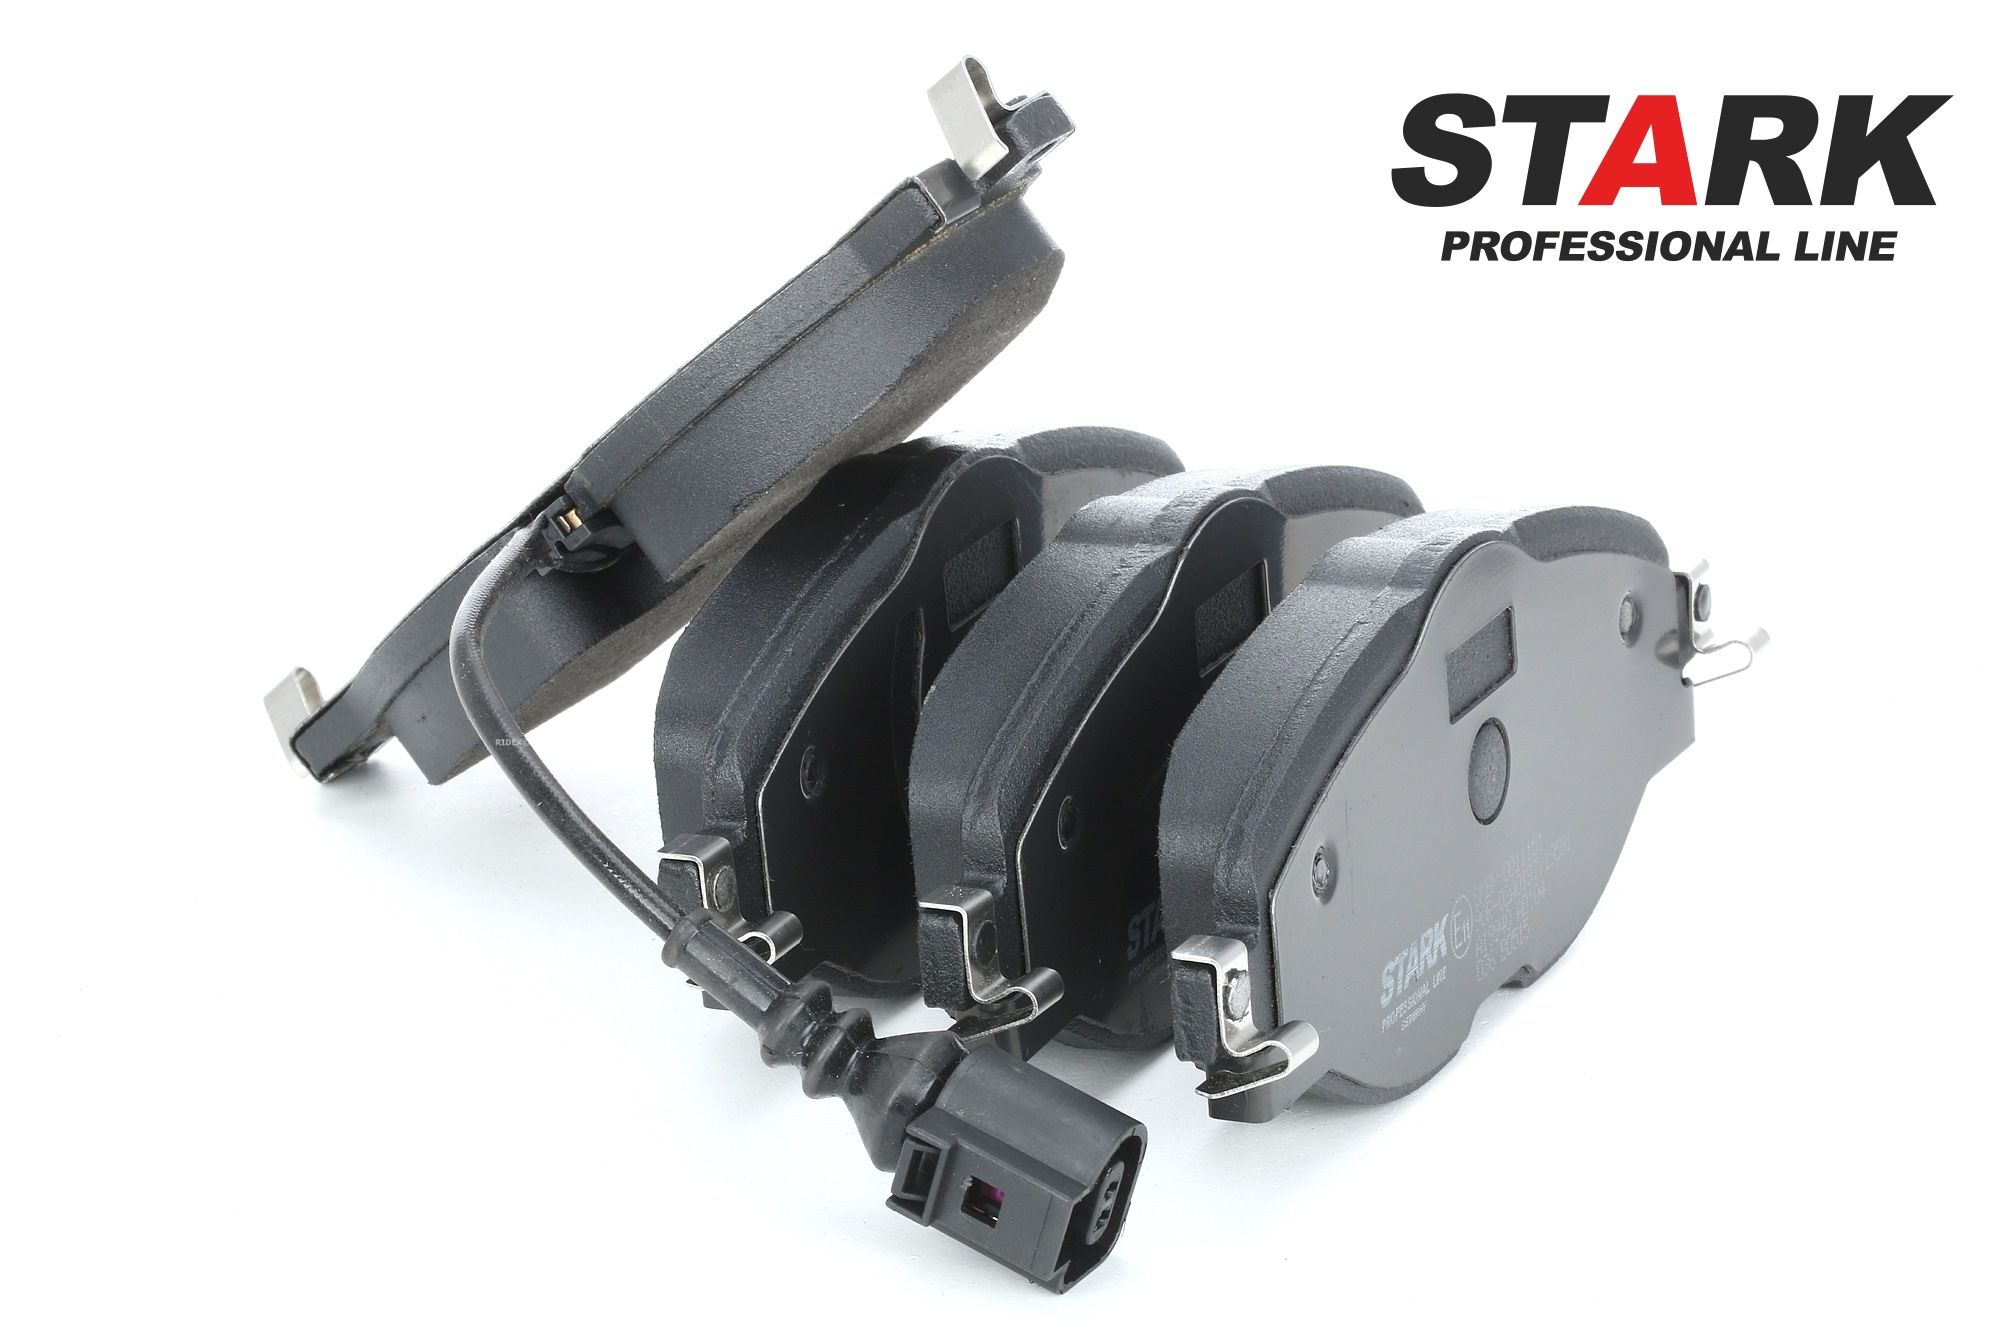 STARK SKBP-0011151 Bremsbeläge für Verschleißwarnanzeiger vorbereitet, inkl. Verschleißwarnkontakt